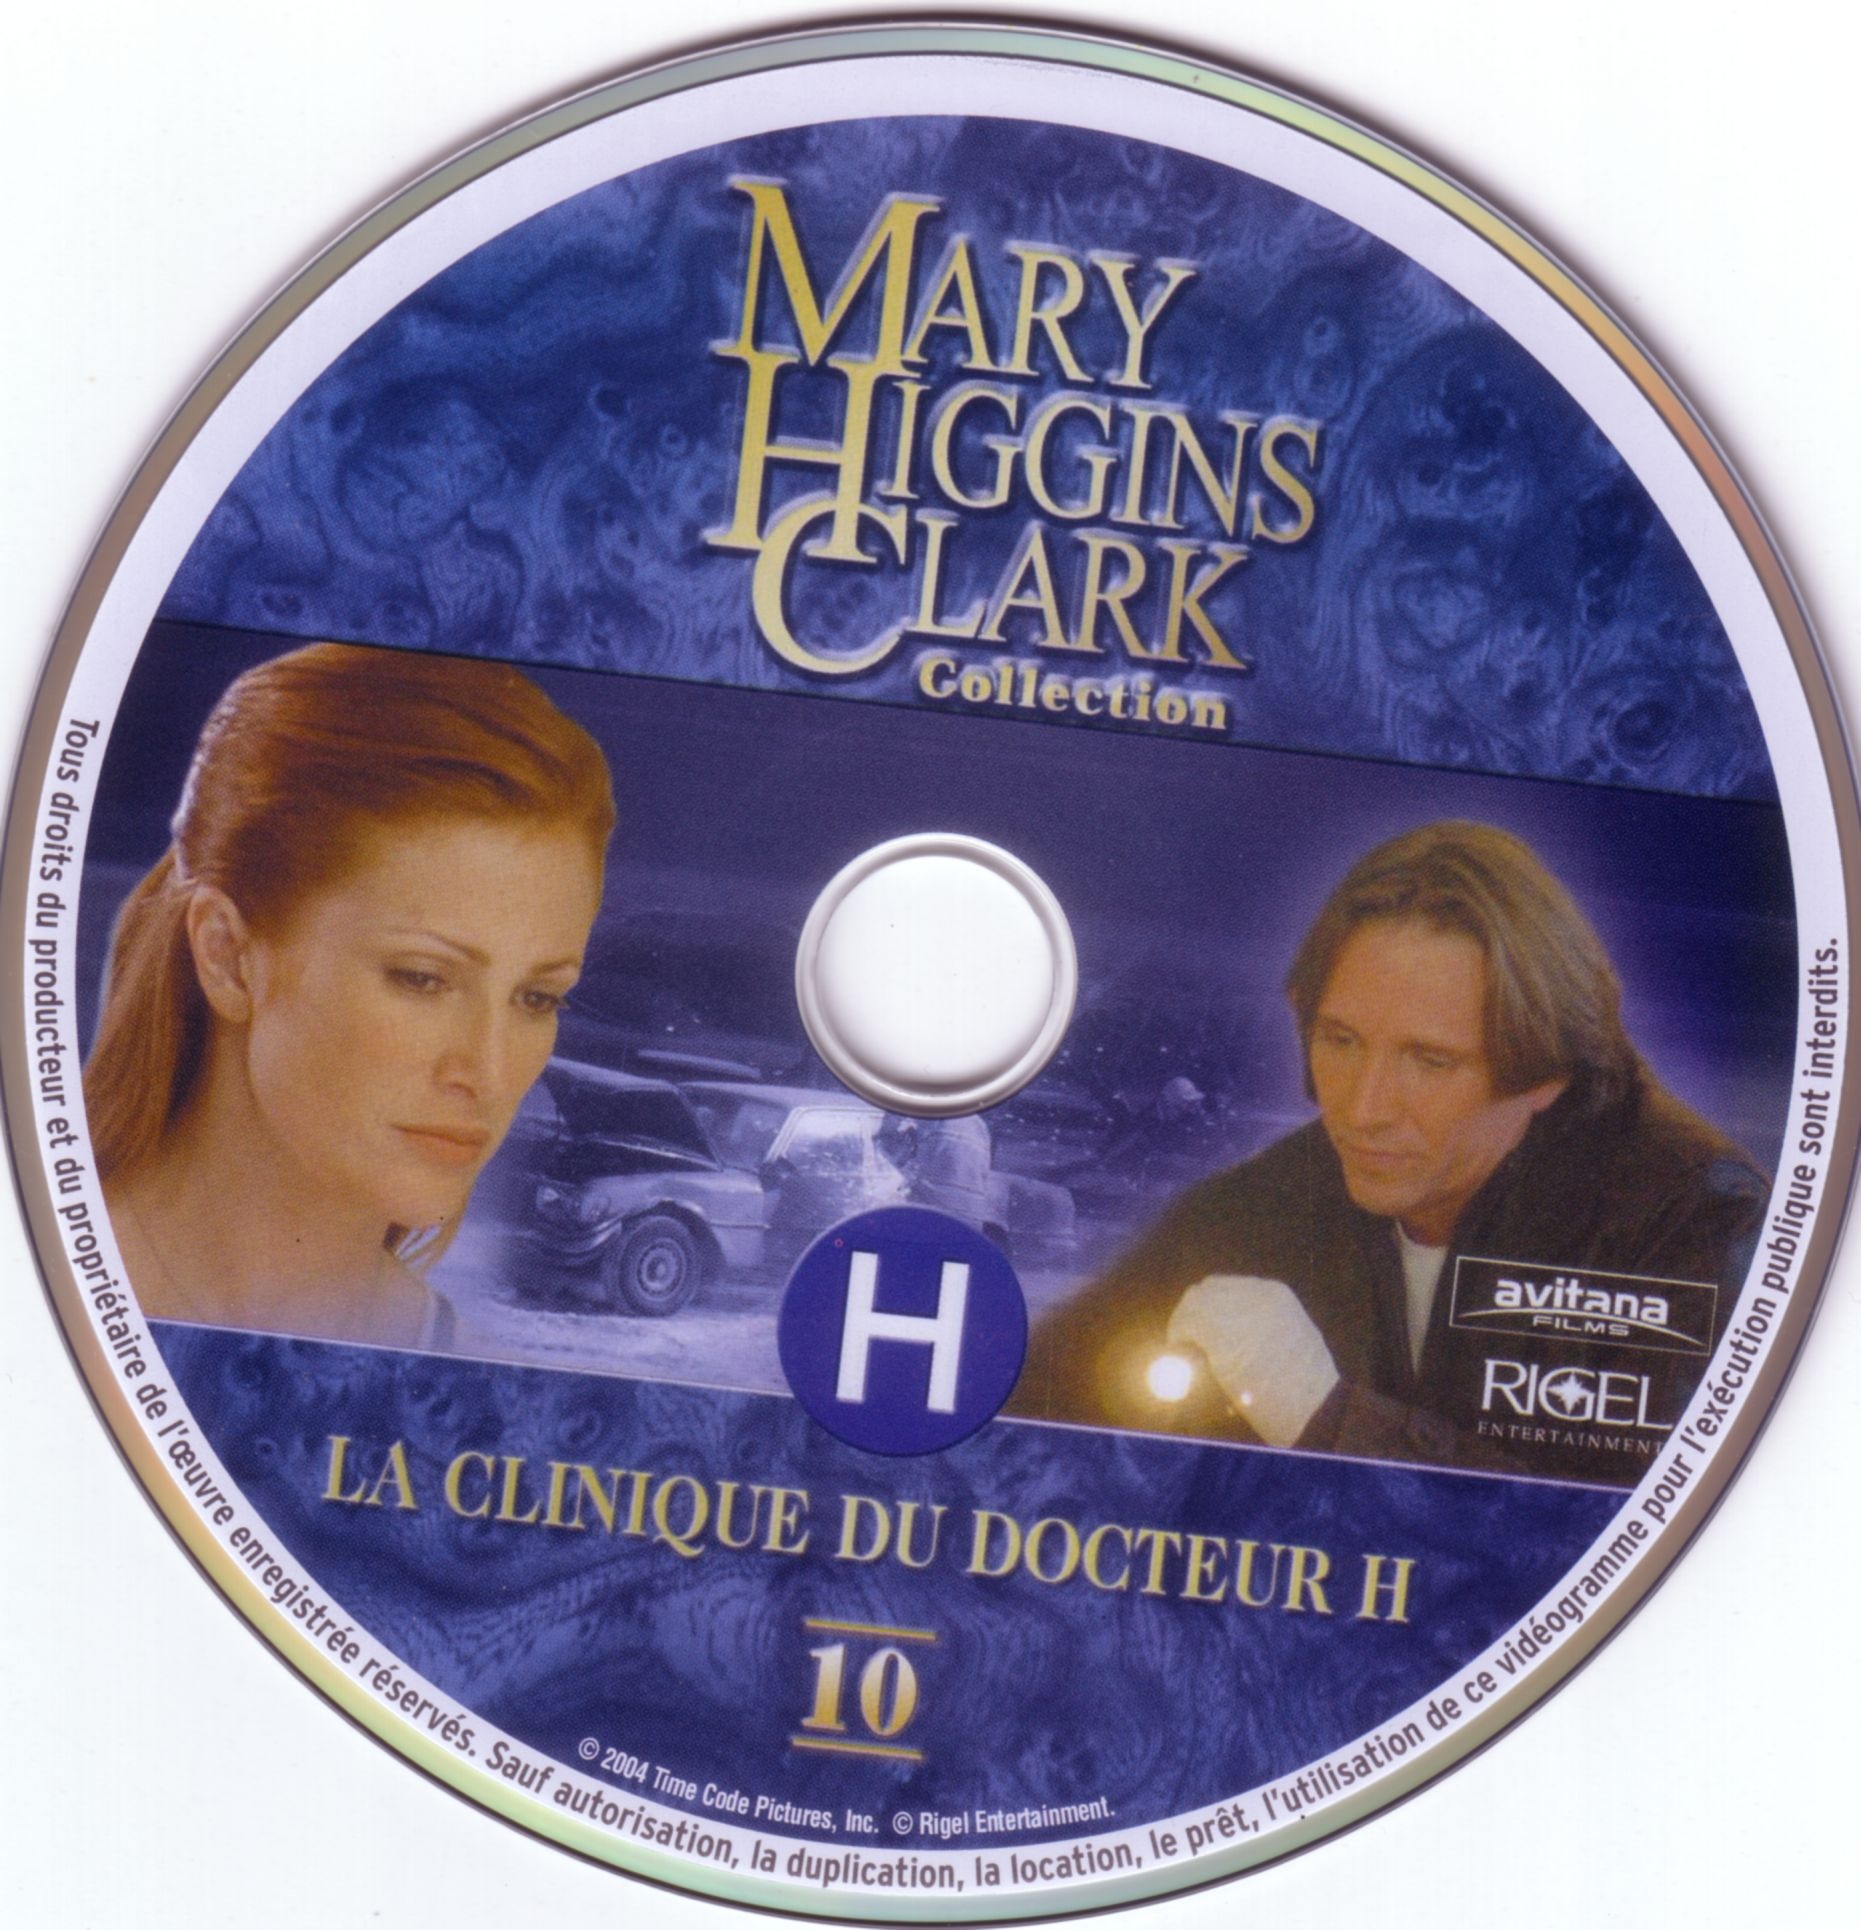 Mary Higgins Clark vol 10 - La clinique du docteur H